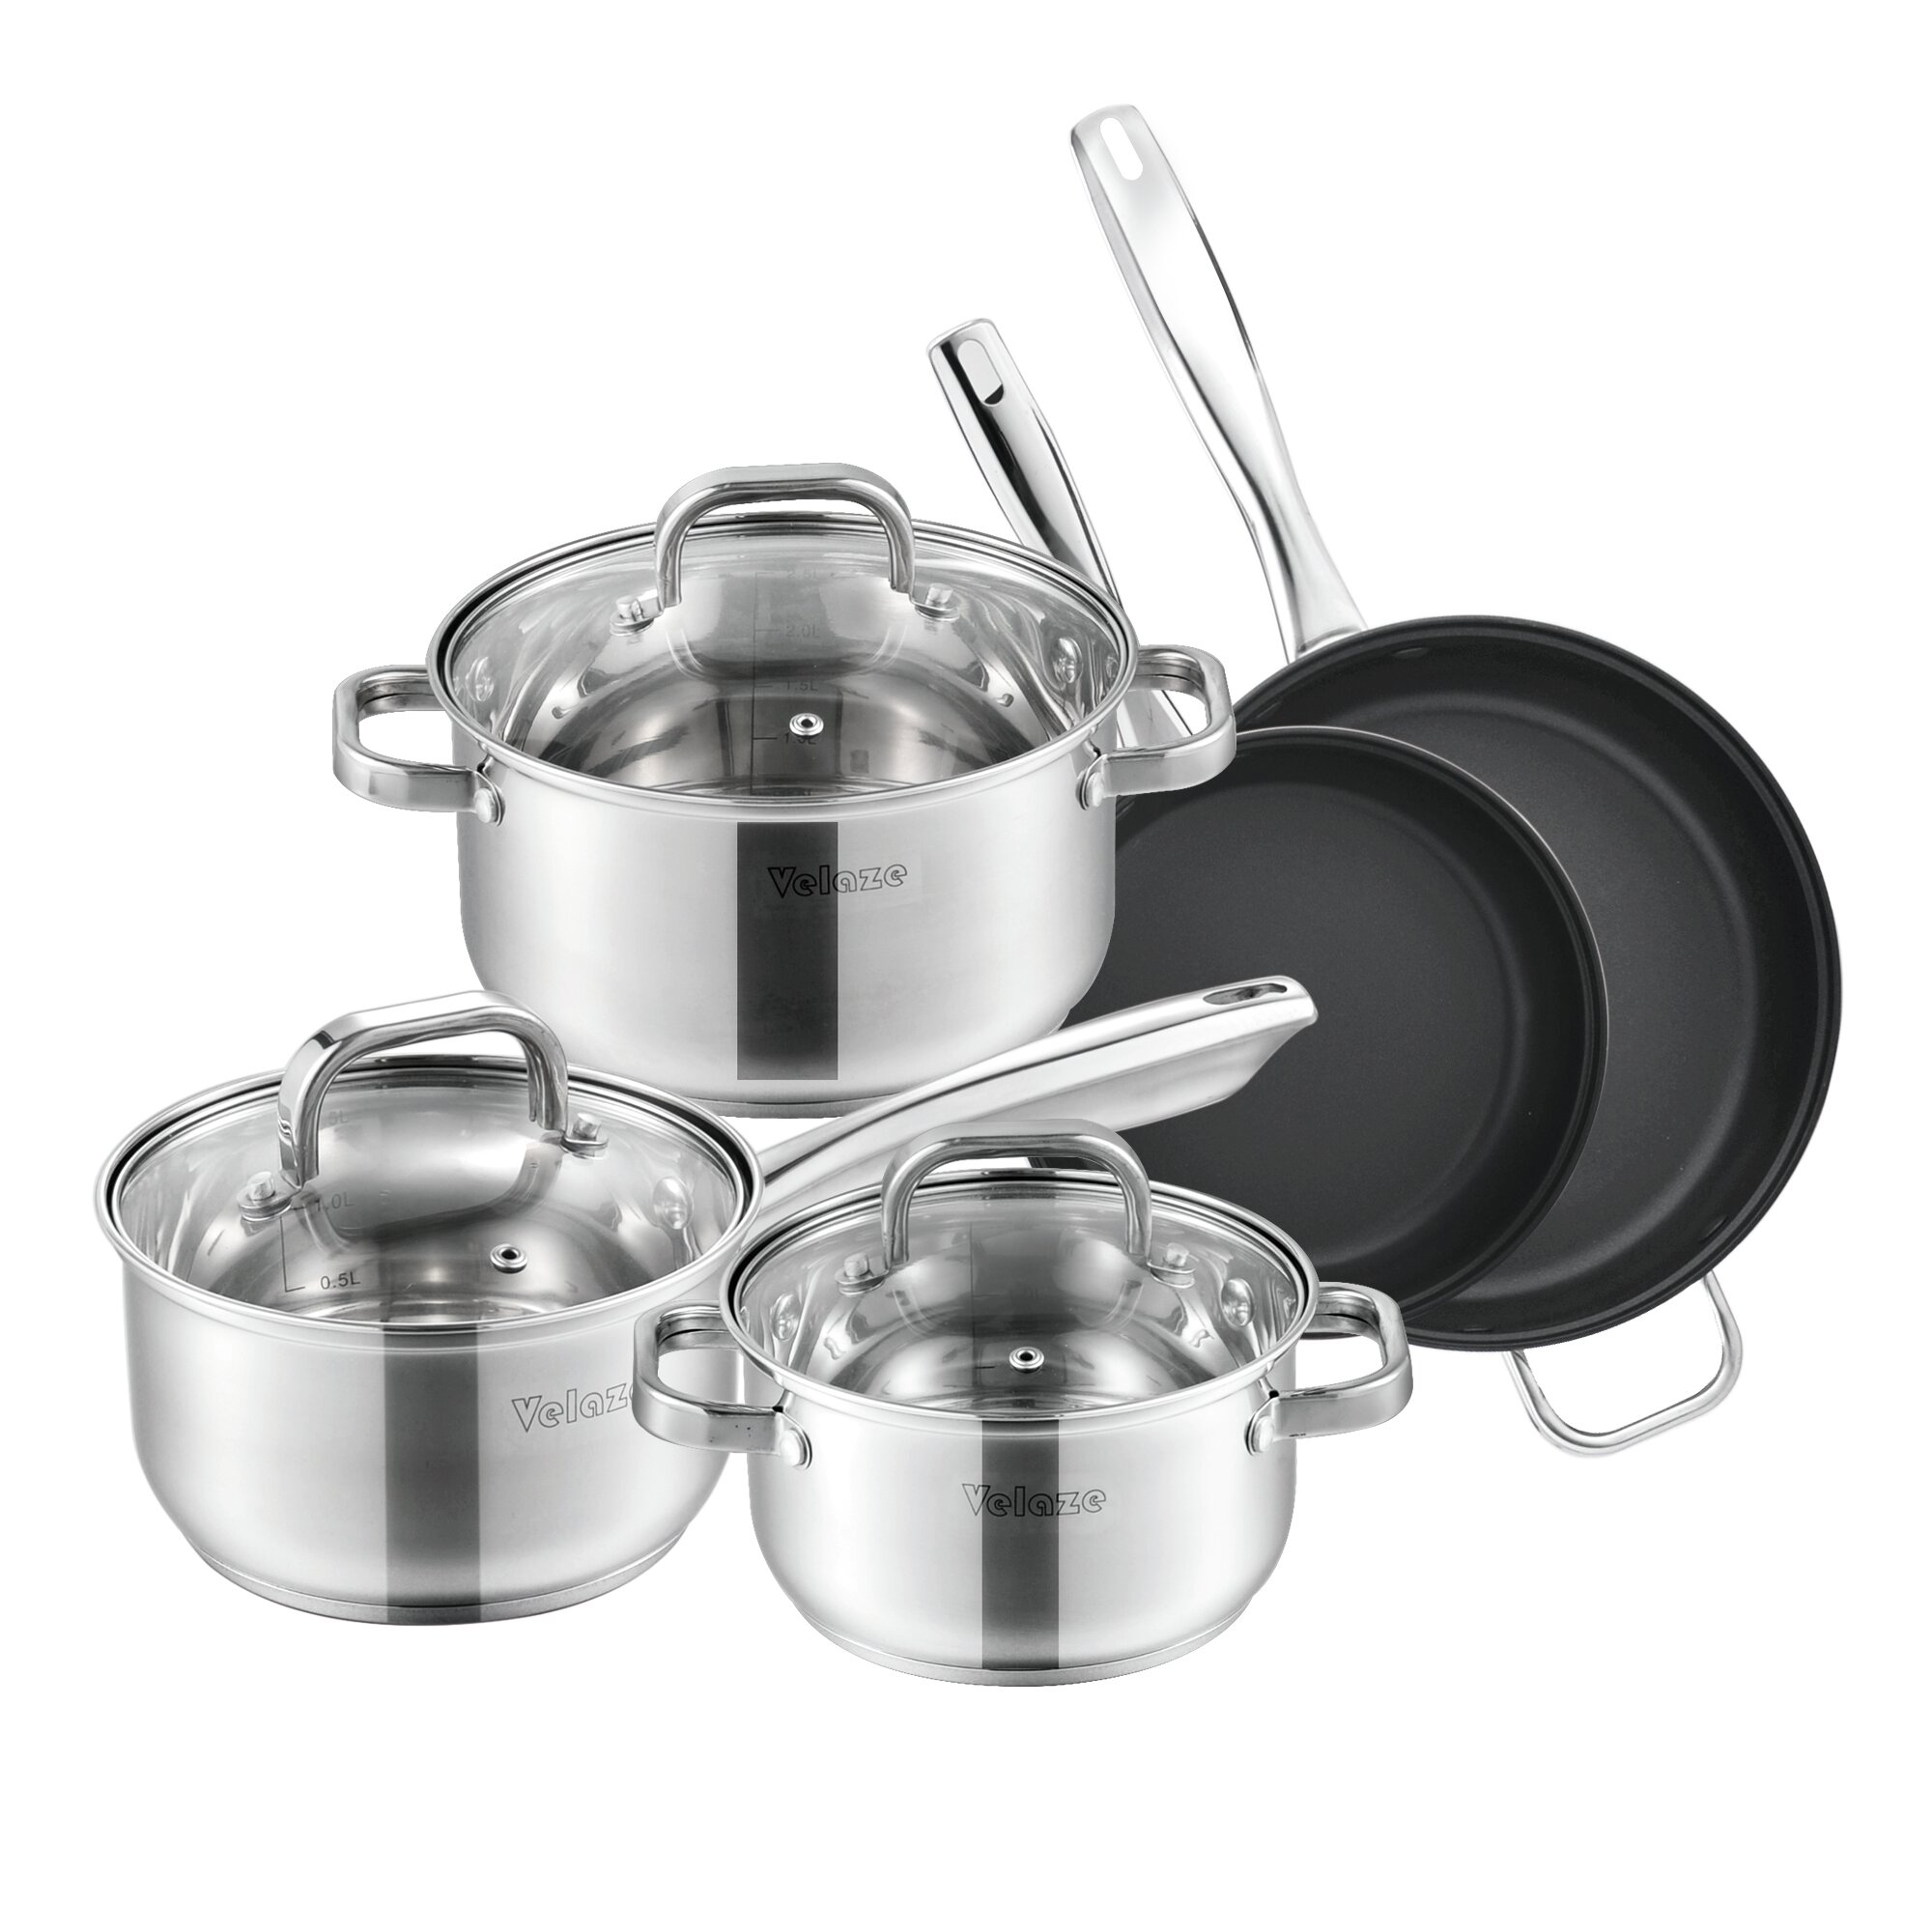 https://assets.wfcdn.com/im/17780617/compr-r85/1530/153078171/eloria-8-piece-non-stick-enameled-cast-iron-cookware-set.jpg